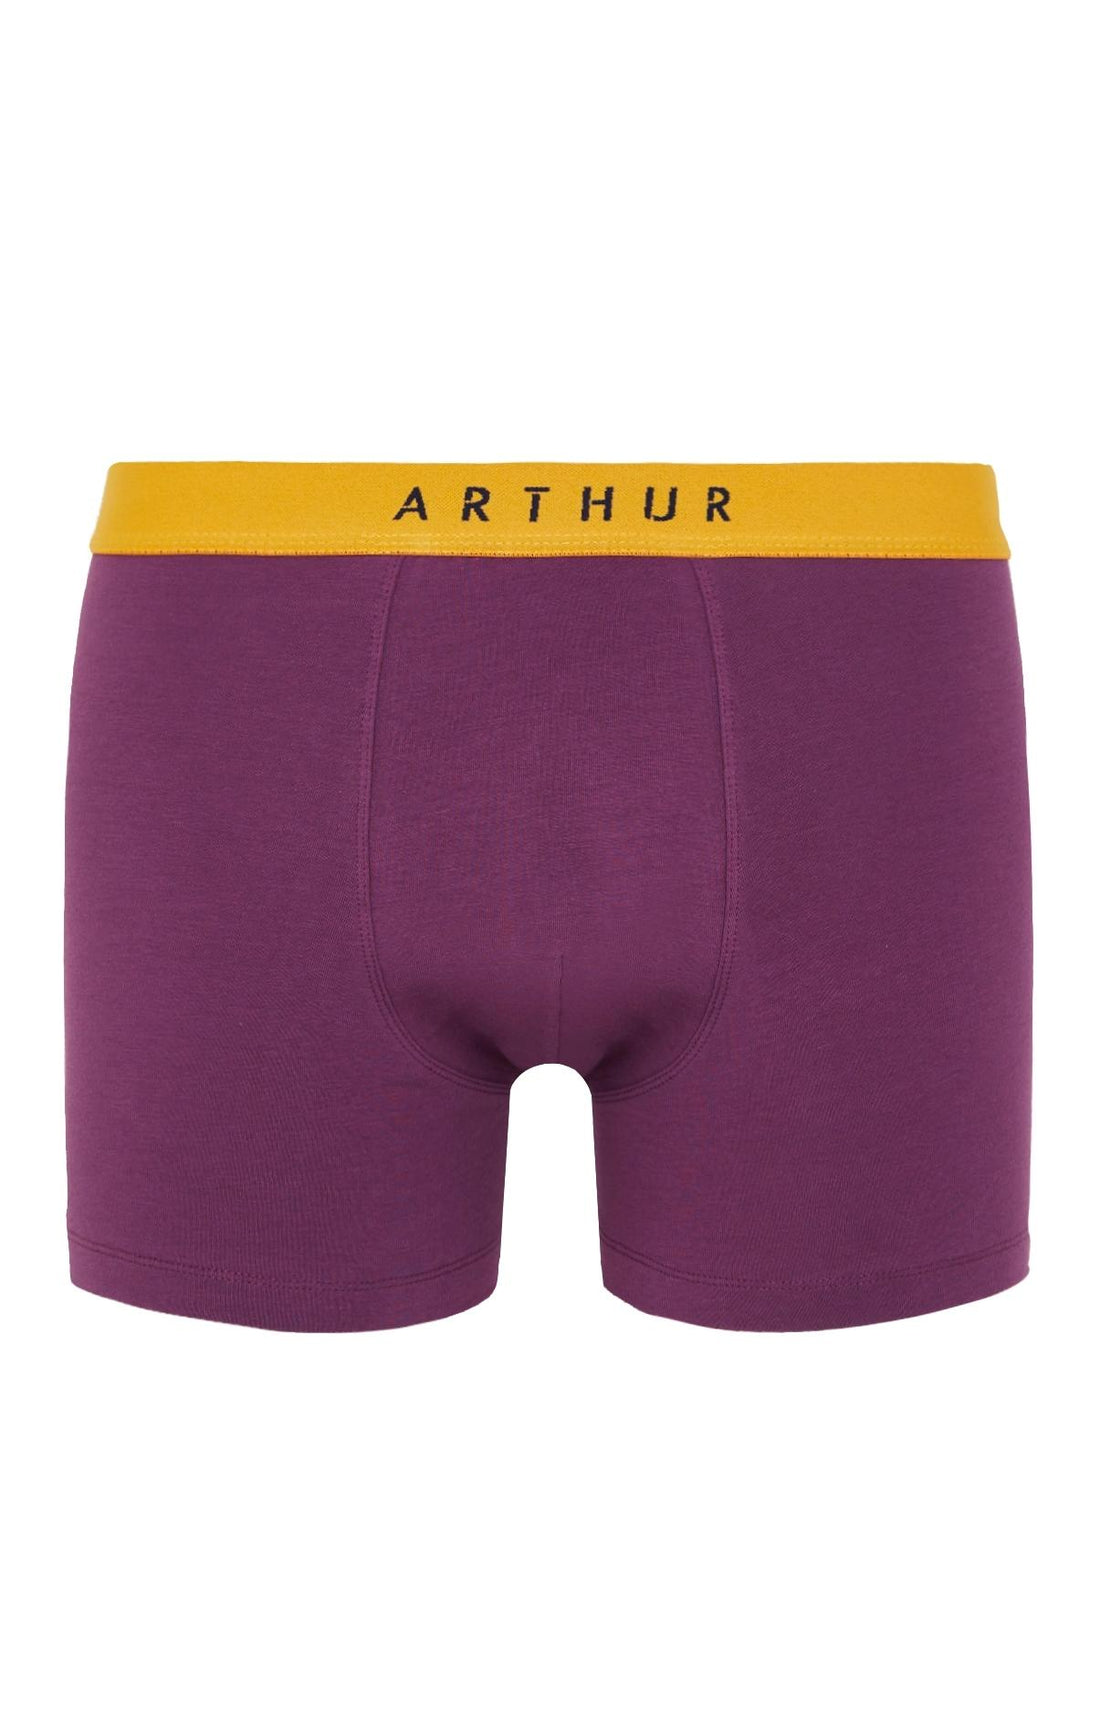 Boxer Marine Sous-vêtements homme Arthur – 